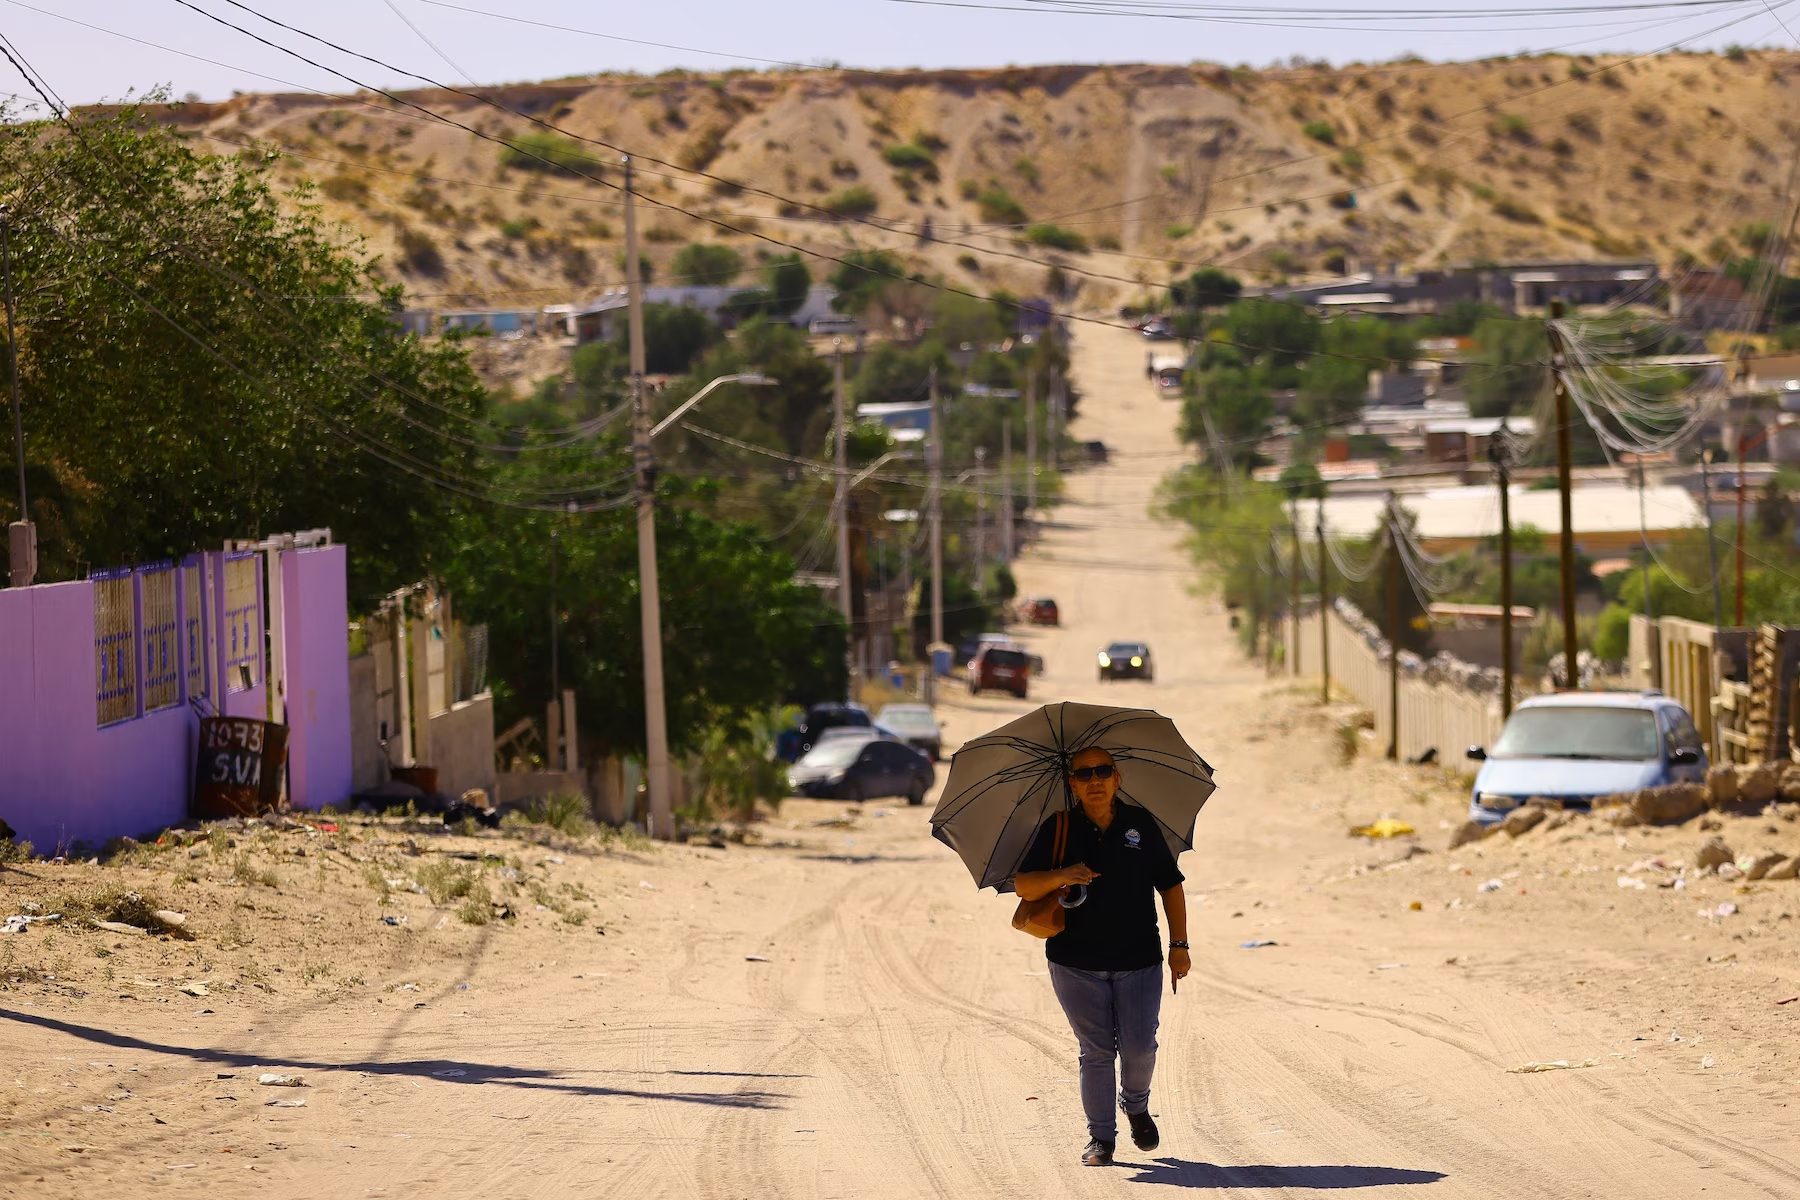 Las altas temperaturas han afectado la salud y suministros en distintas comunidades. - Foto Jose Luis Gonzalez/Reuters